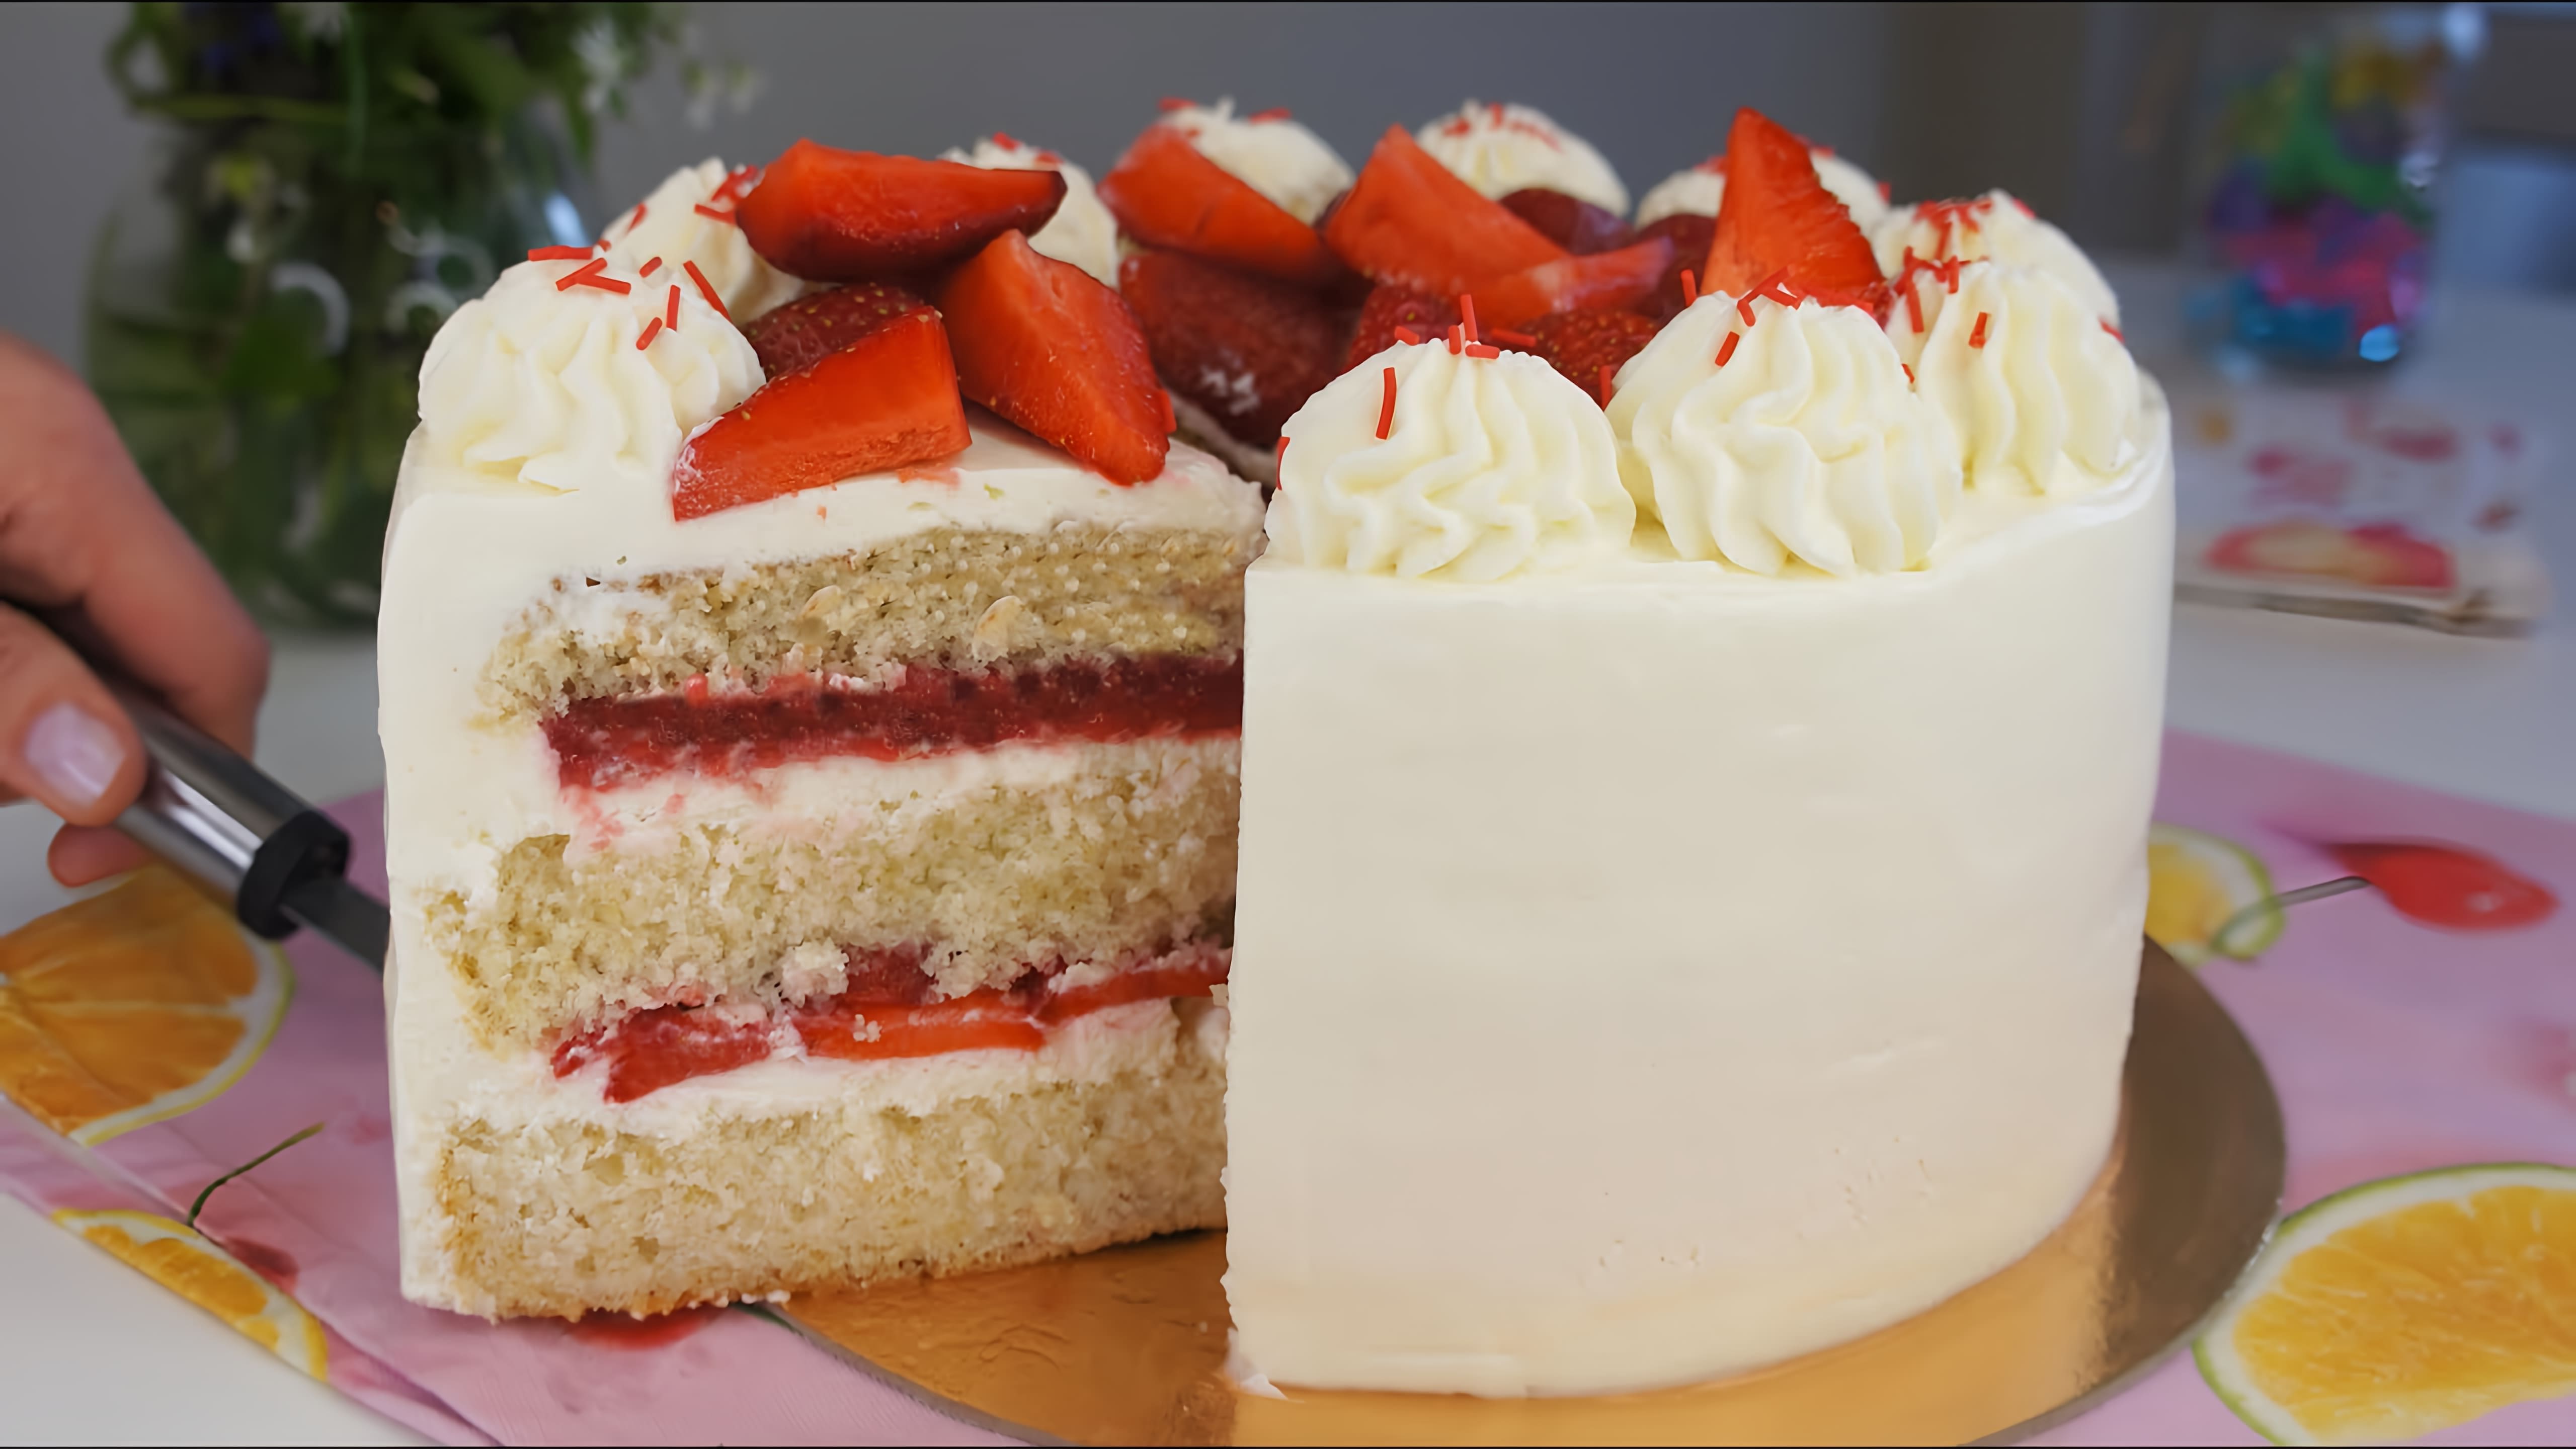 В этом видео демонстрируется рецепт клубничного торта с использованием свежих ягод и конфитюра